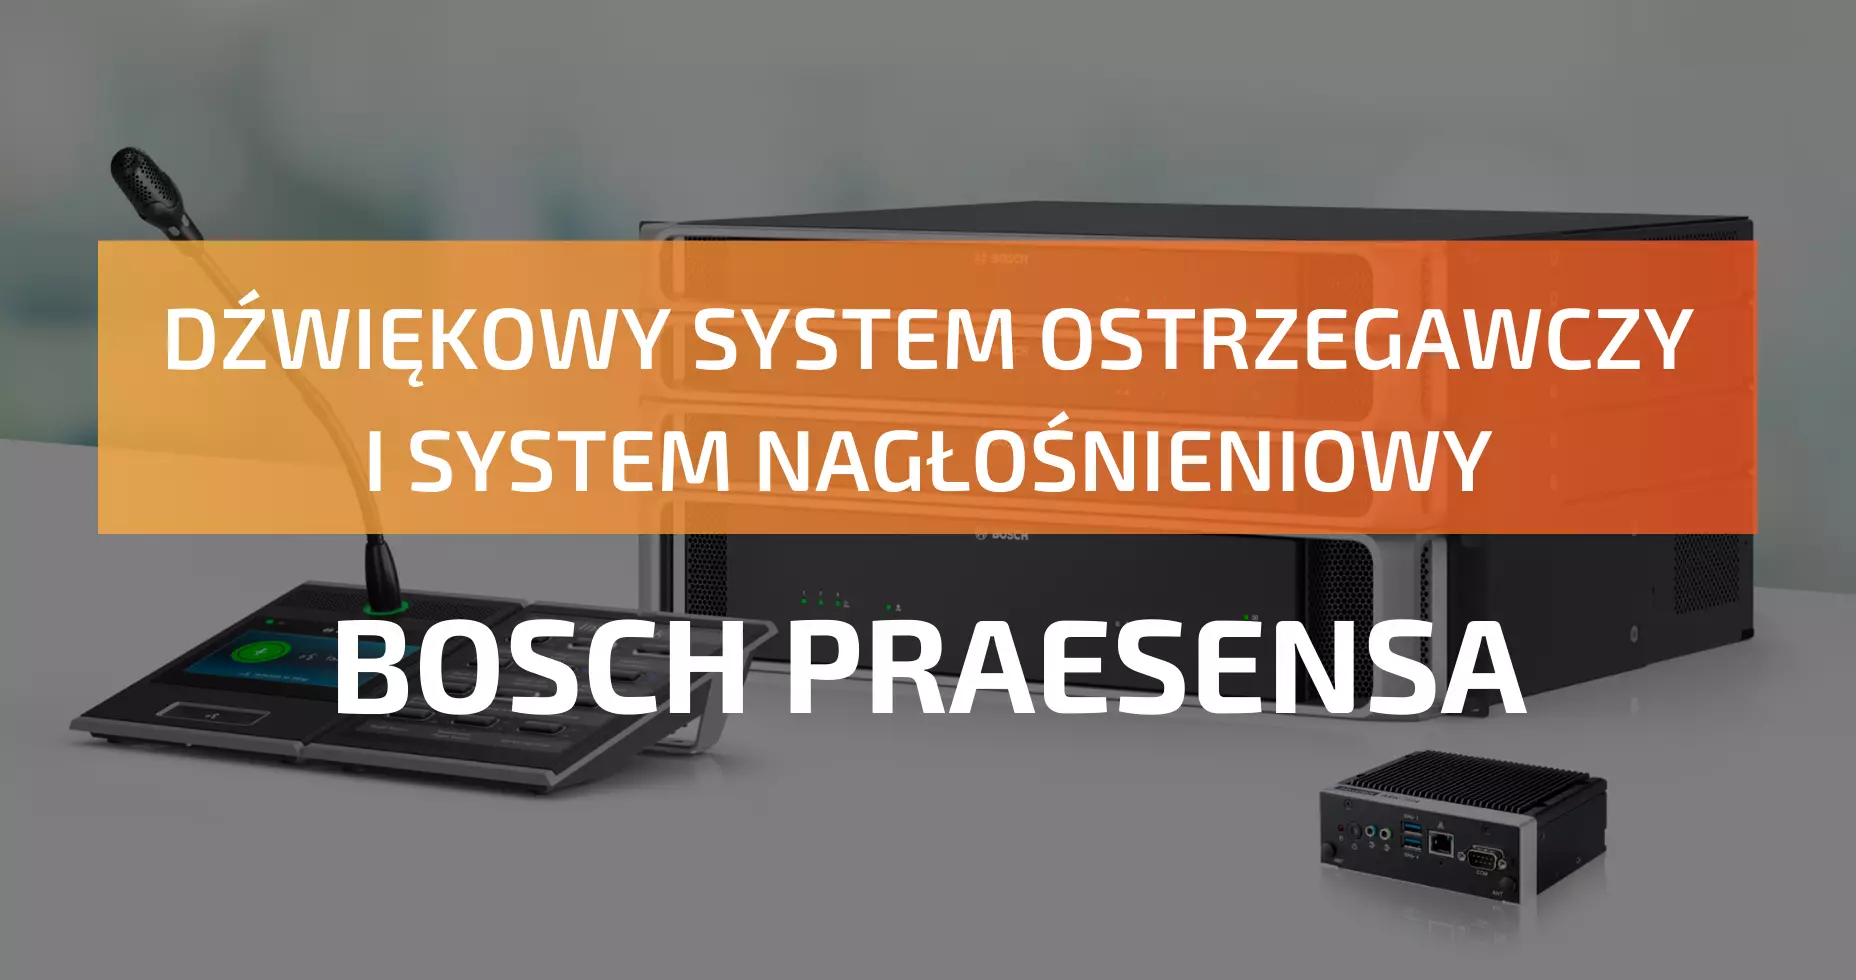 Dźwiękowy system ostrzegawczy i system nagłośnieniowy Bosch Praesensa